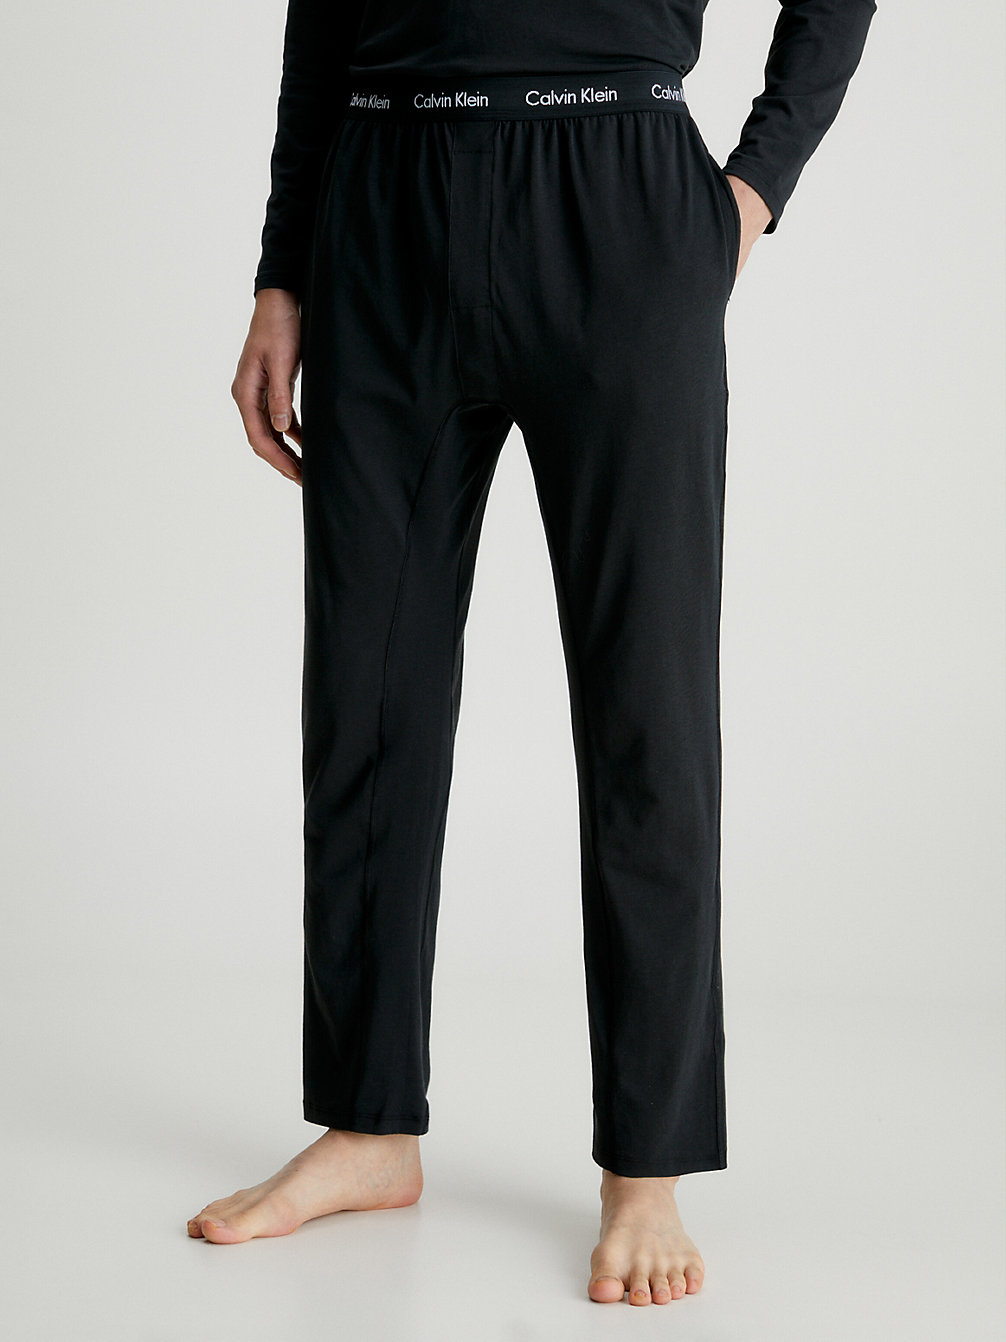 BLACK > Spodnie Od Piżamy - Bawełna Ze Stretchem > undefined Mężczyźni - Calvin Klein